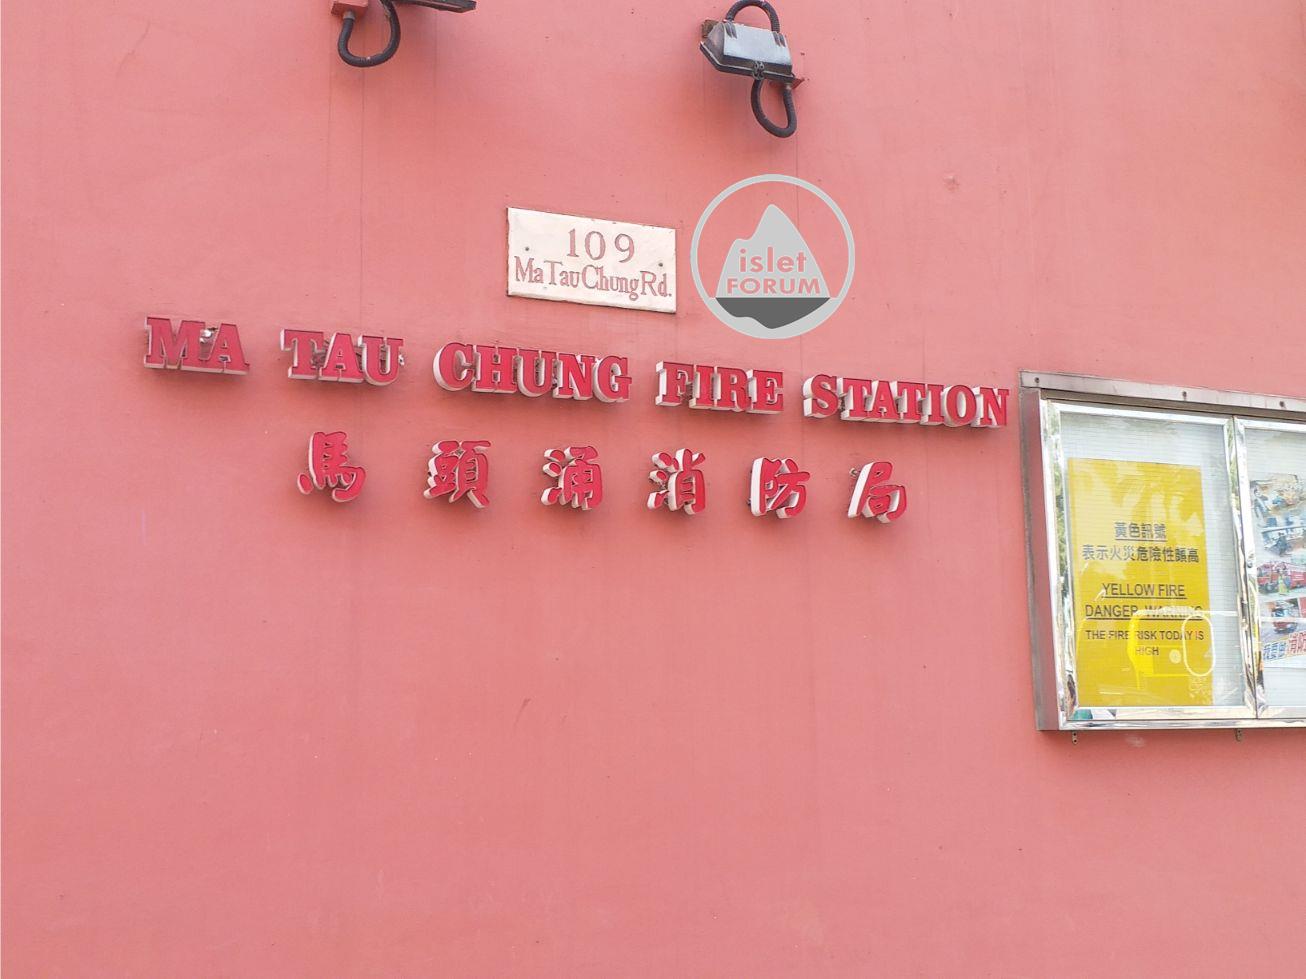 馬頭涌消防局Ma Tau Chung Fire Station (2).jpg